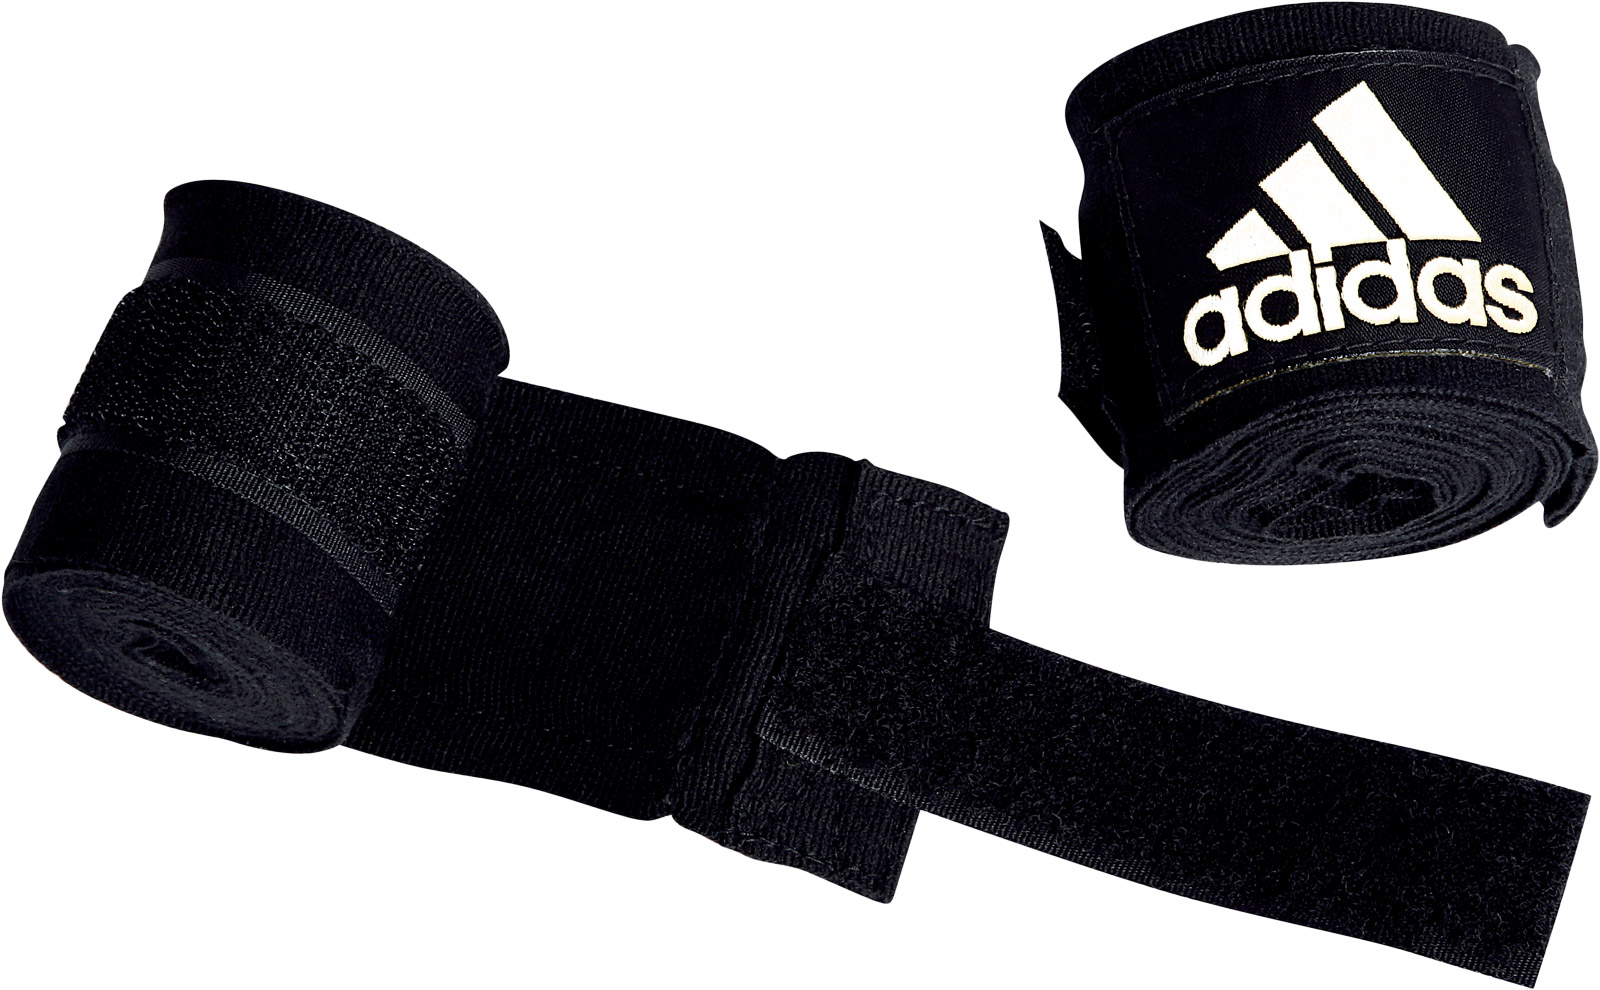 Бинты для приседаний. Боксерские бинты адидас. Кистевые бинты adidas Boxing Crepe Bandage 450 см. Бинты для бокса адидас. BP-6232 эластичные боксерские бинты черные.